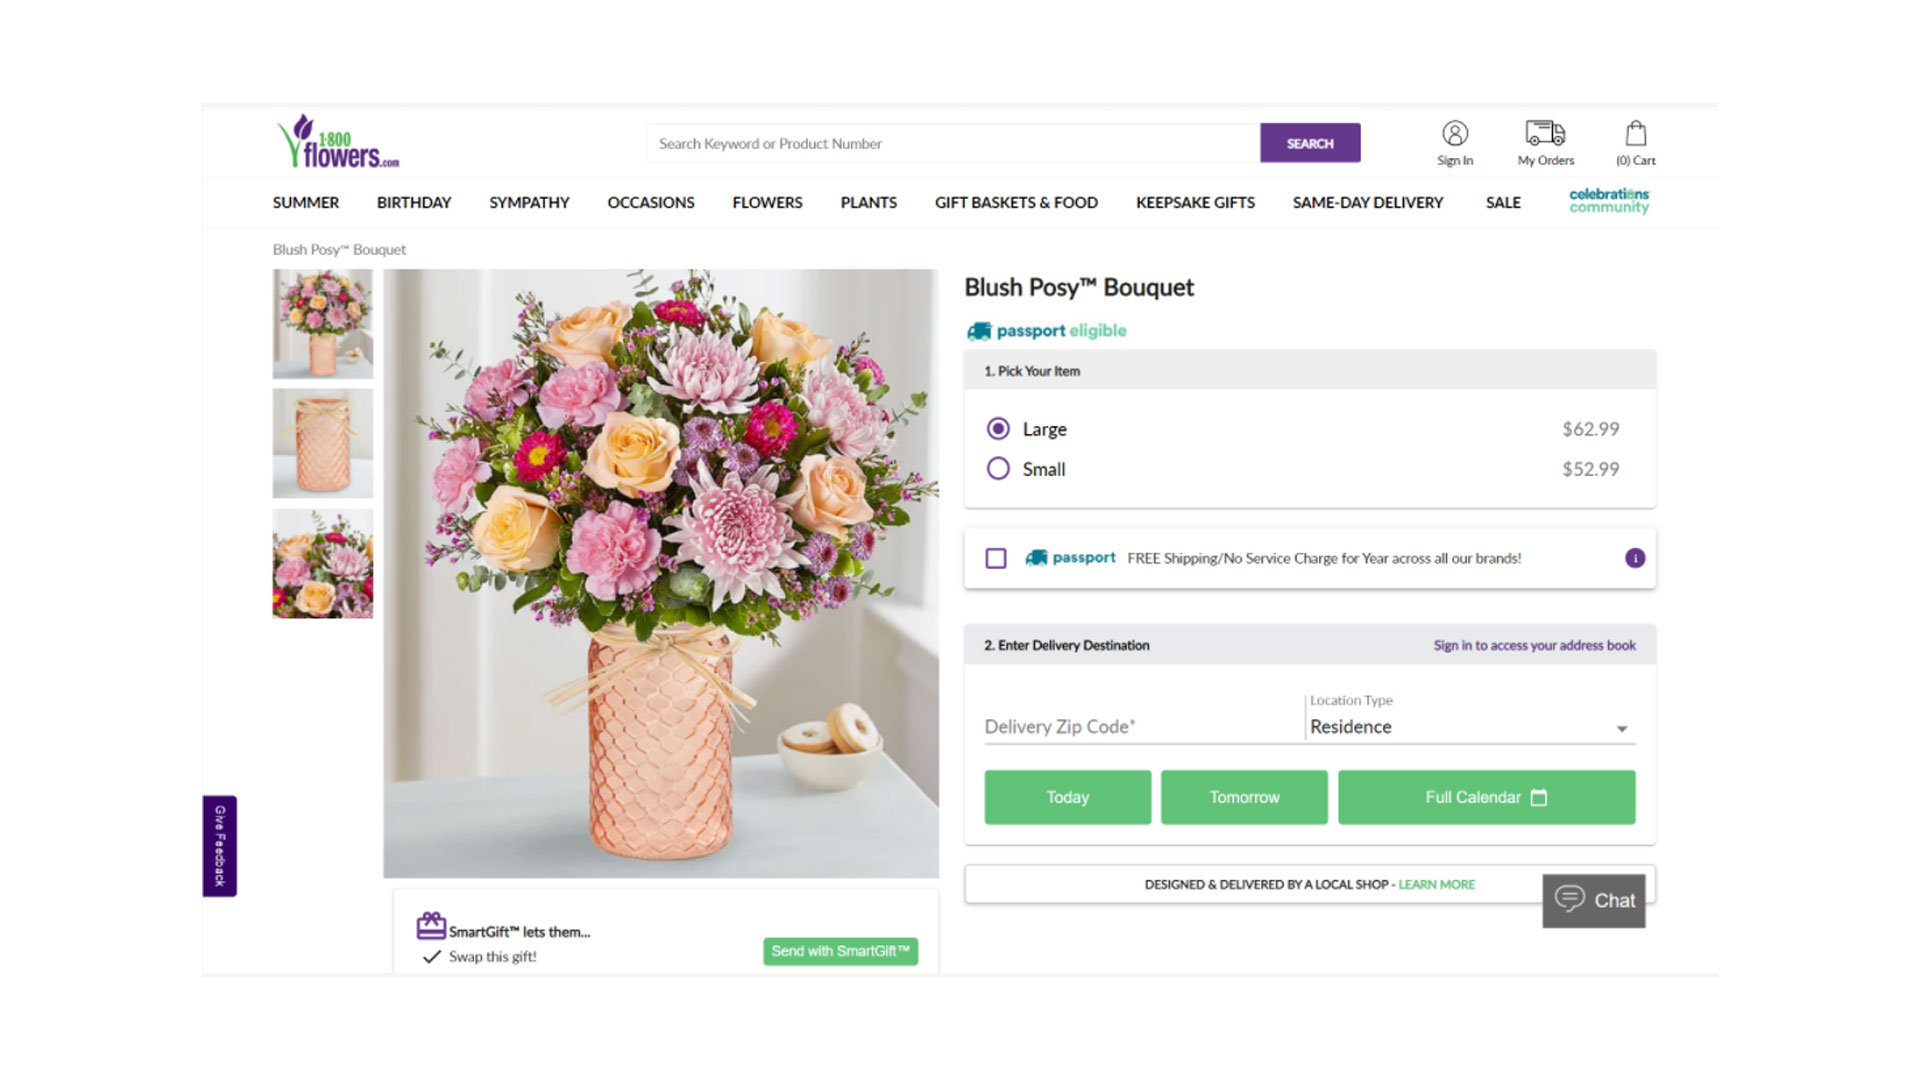 1-800-Flowers avis : L'image montre les options d'achat pour un bouquet spécifique.